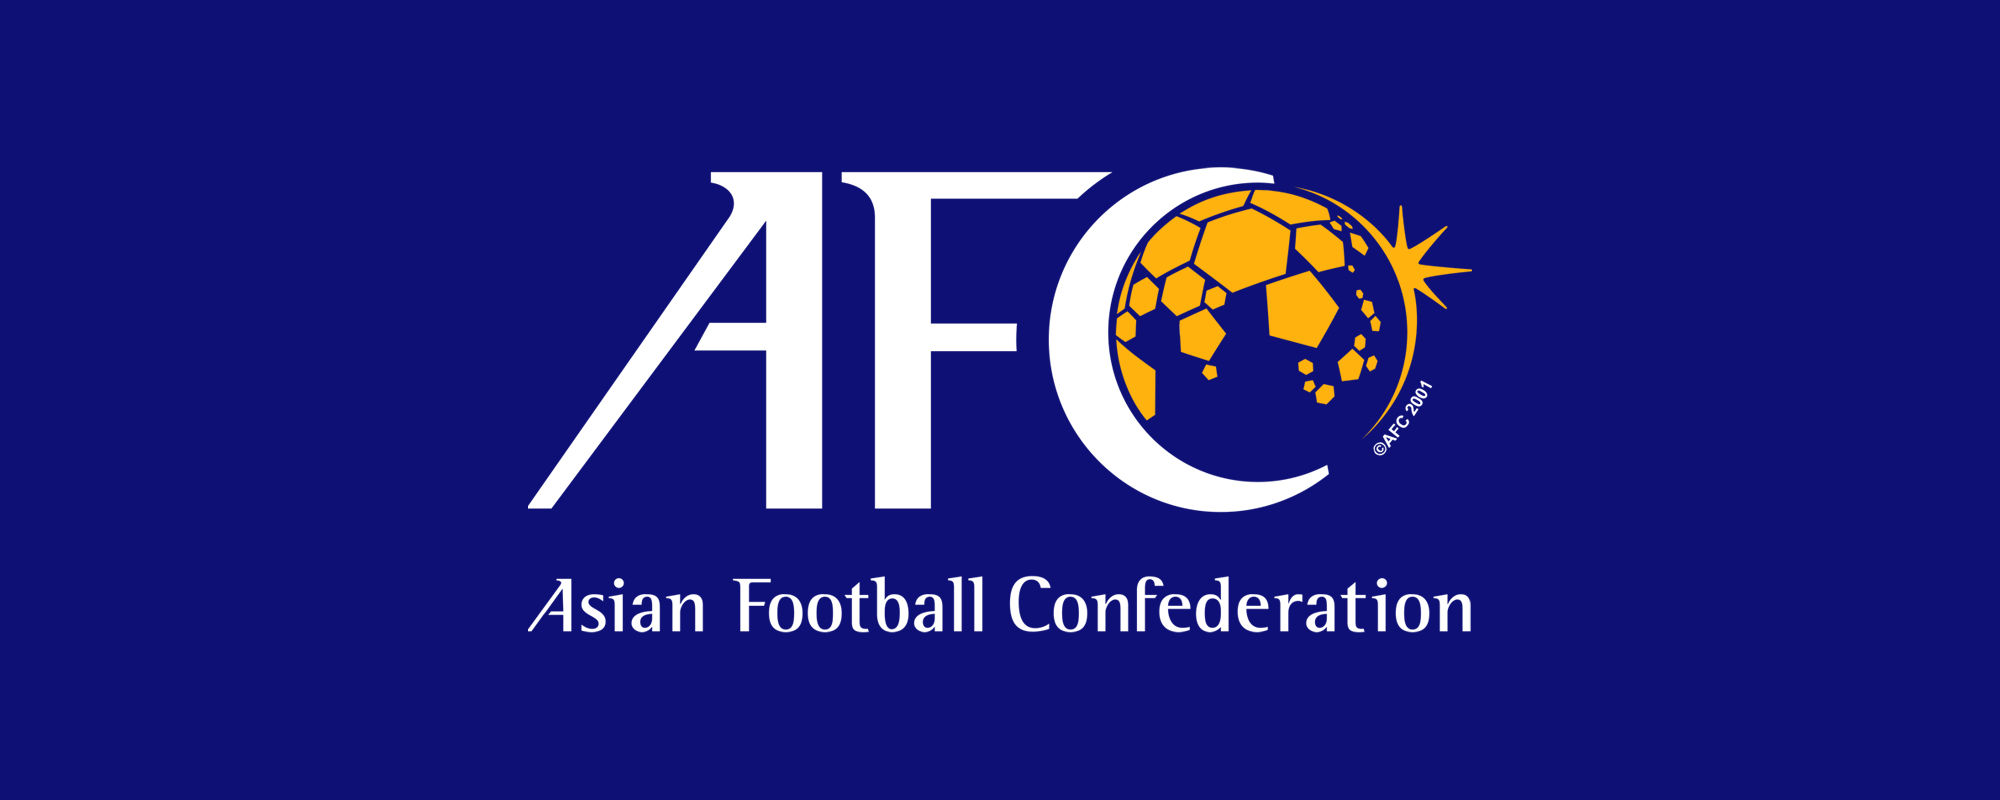 الاتحاد الآسيوي يعلن تشكيلة فريق الأحلام في كأس آسيا